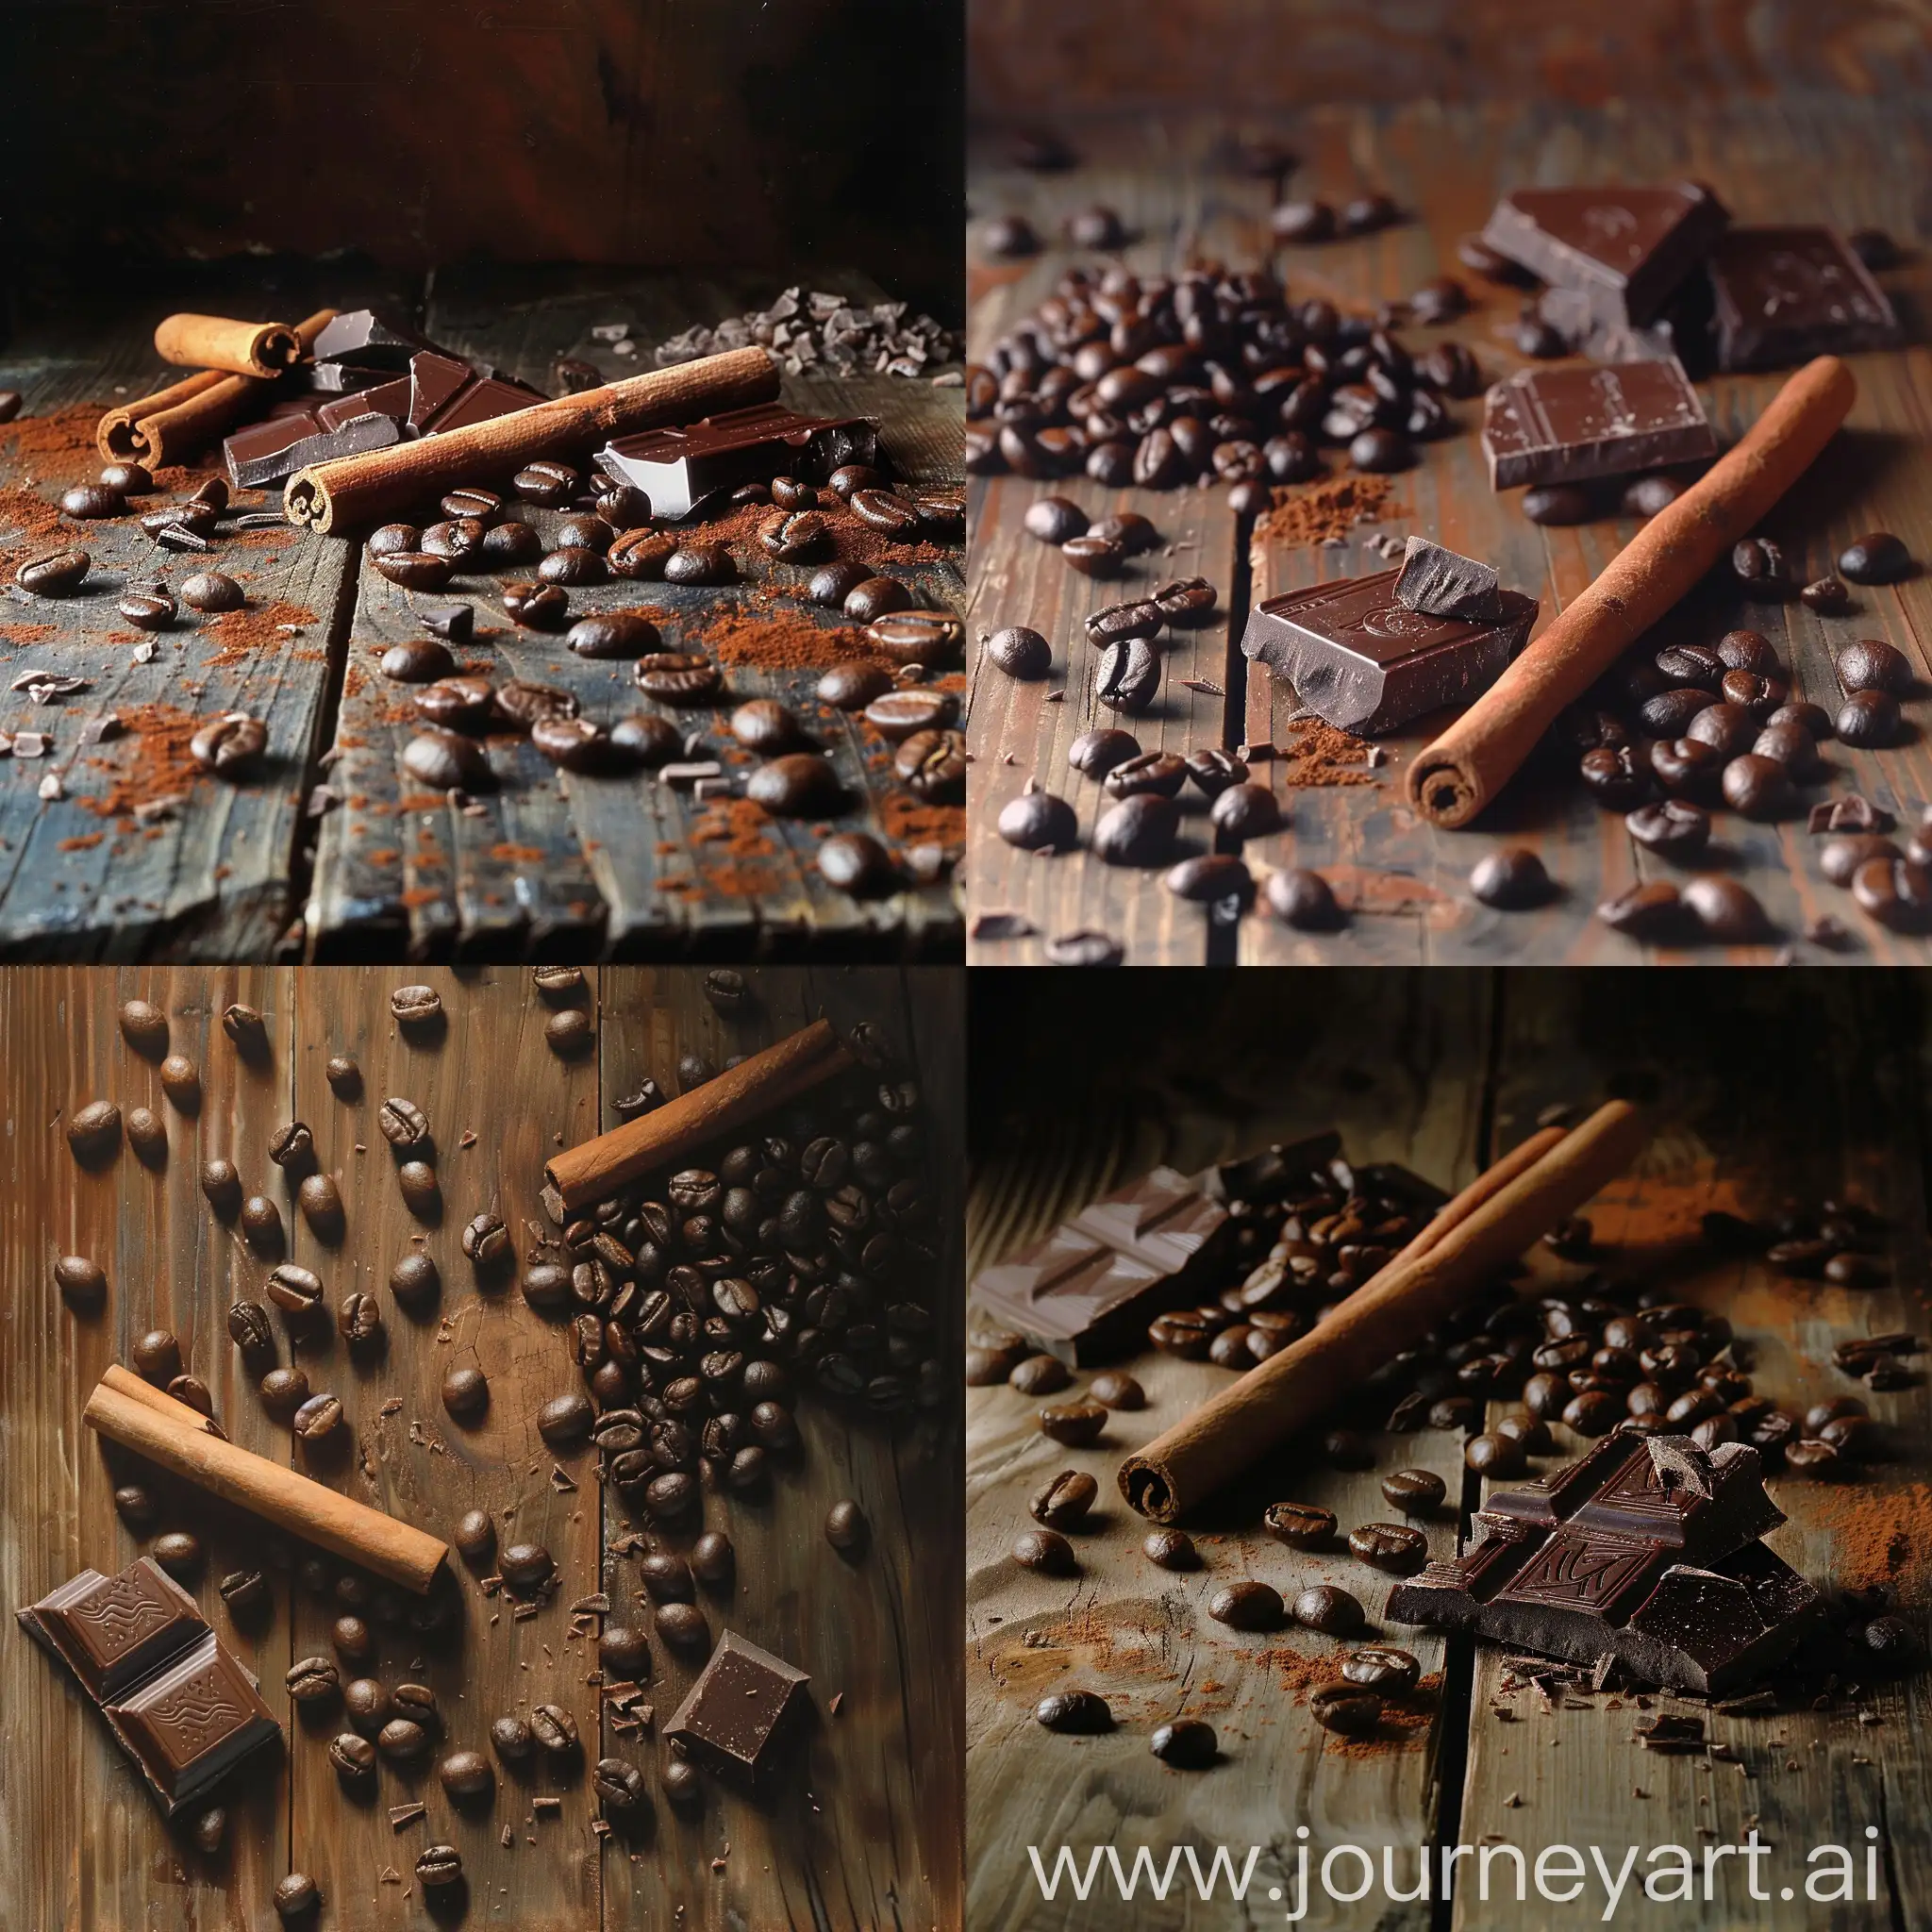 старый деревянный стол, на нем рассыпаны зерна кофе, несколько кусочков шоколада .  1 стручок корицы, гиперреализм,  реализм, фото 